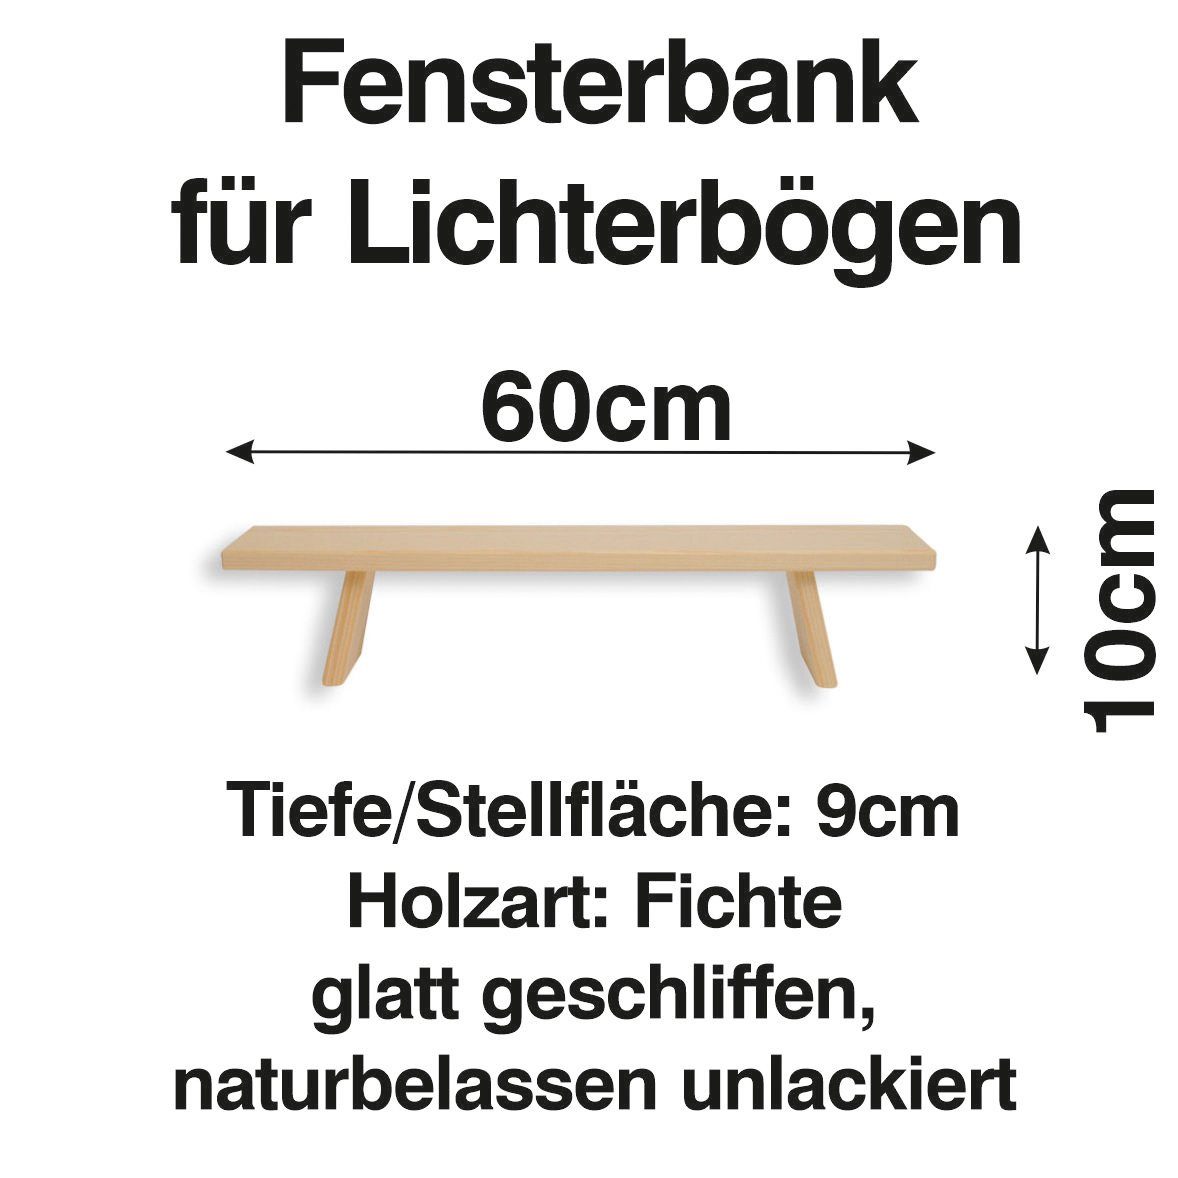 Schwibbogen Bank Holzkunst Schwibbogen-Fensterbank Lichterbogen cm Erhöhung Fenst 60 Schenk